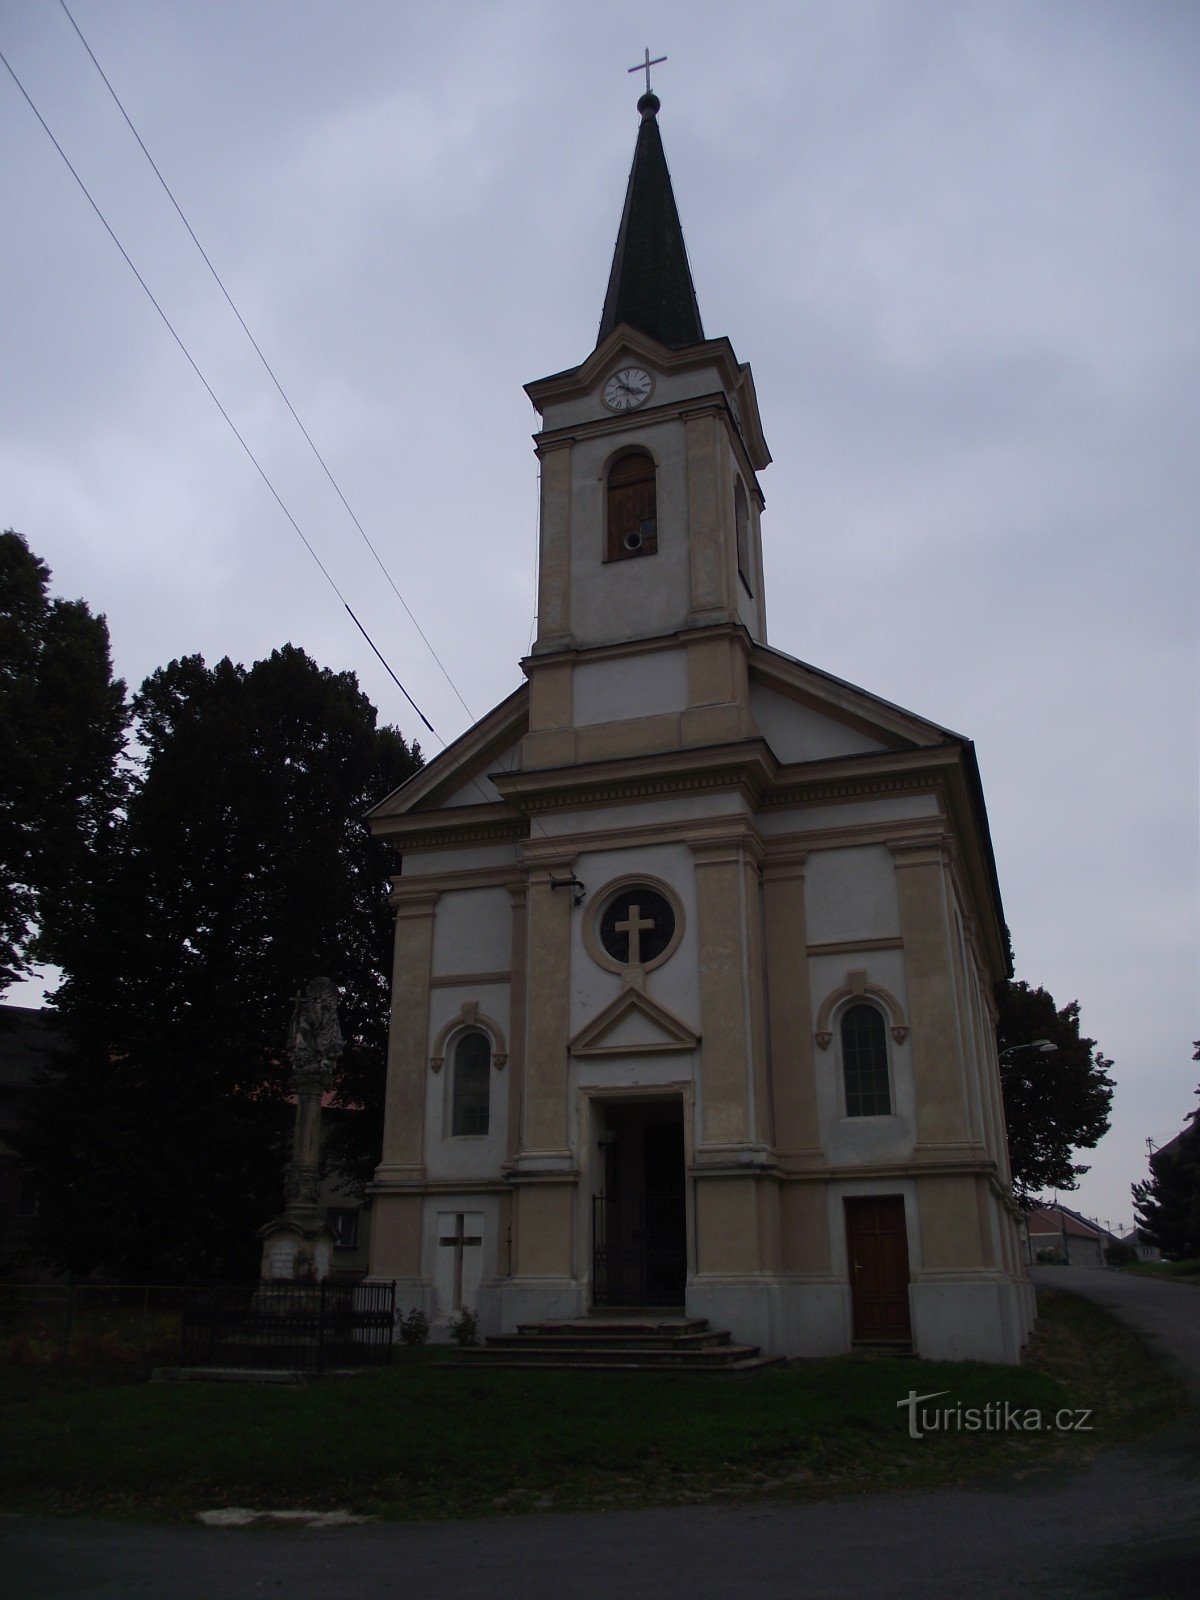 фасад каплиці з хрестом